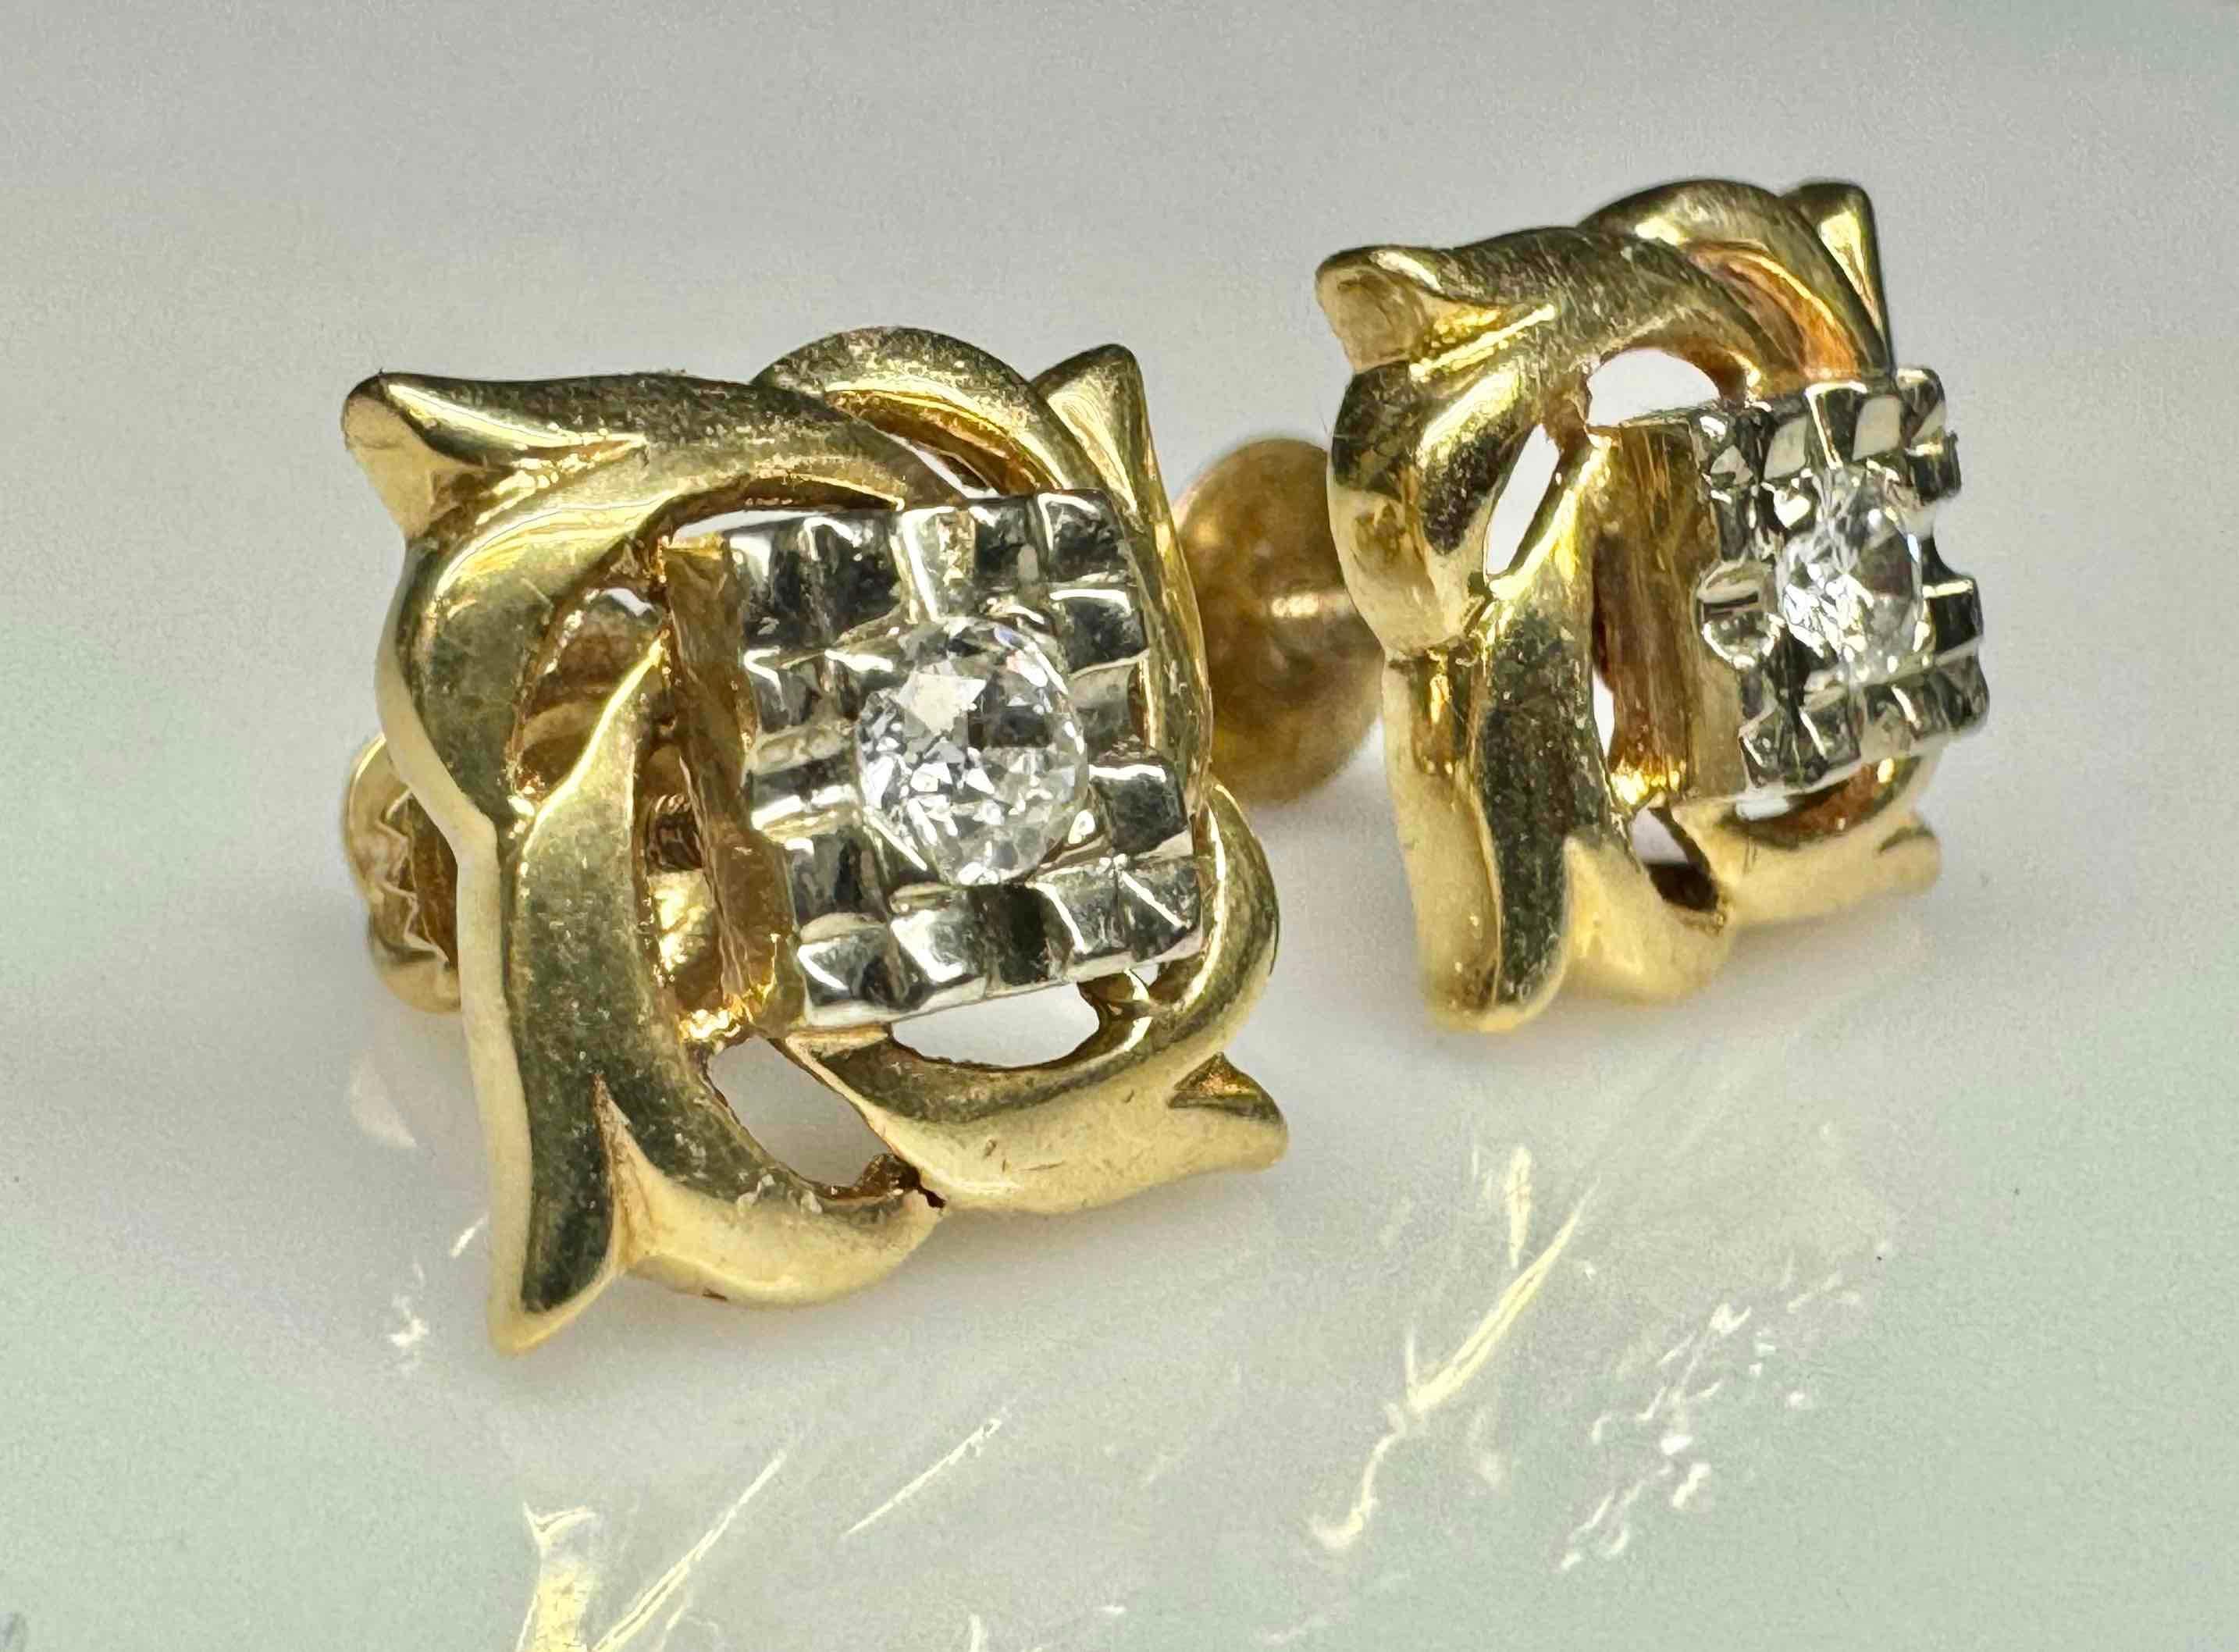 Pair of 14k Gold Diamond Earrings 3.17g Total